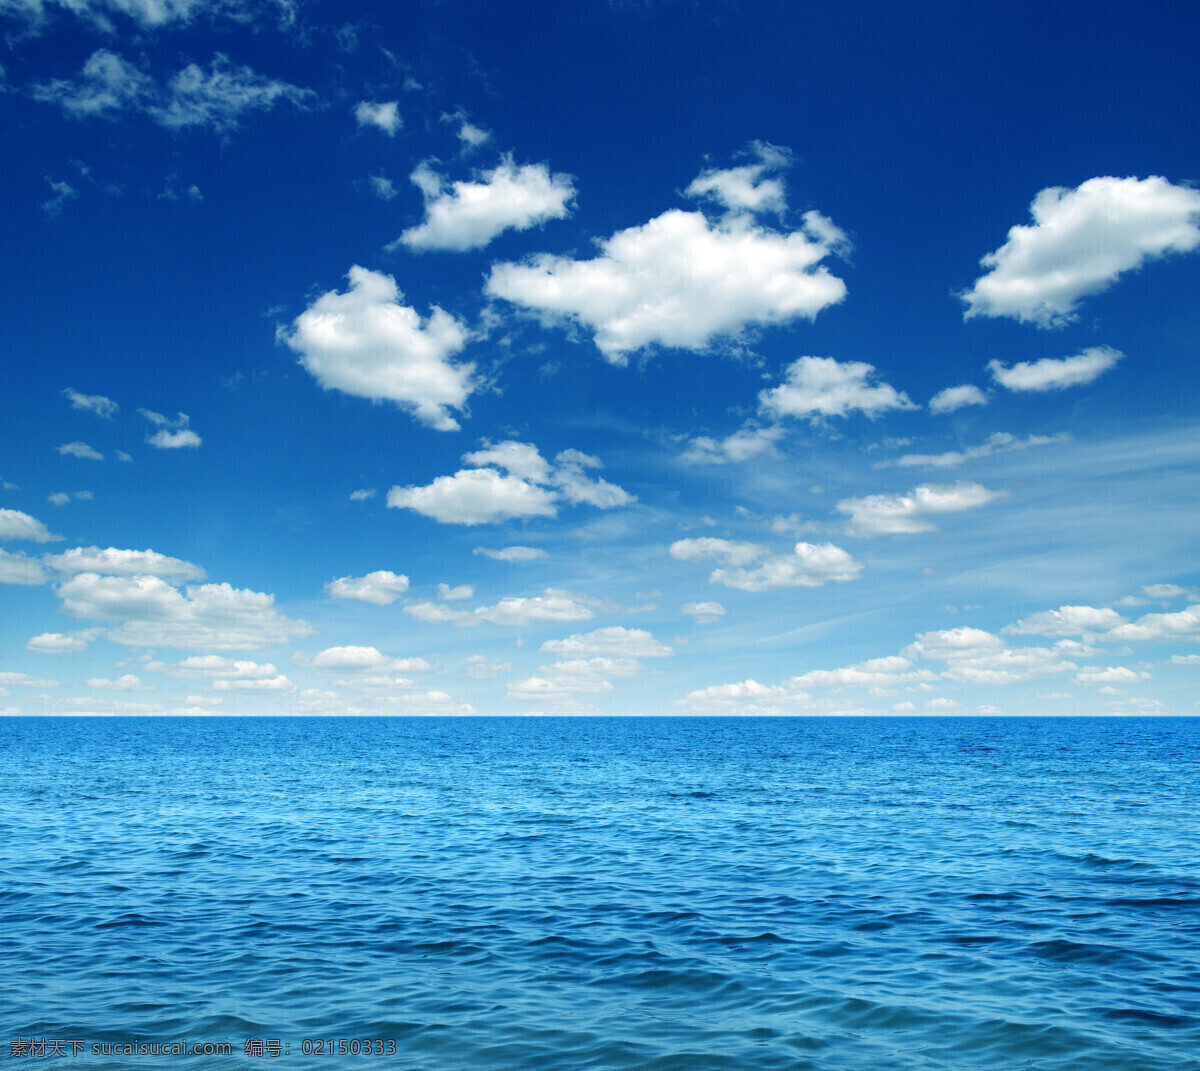 唯美 蓝天 白云 大海 高清 浪花 海浪 海面 风景 海洋 美景 美丽风光 波浪 美丽景色 大海图片 风景图片 海蓝 蓝色 天空 海面风景